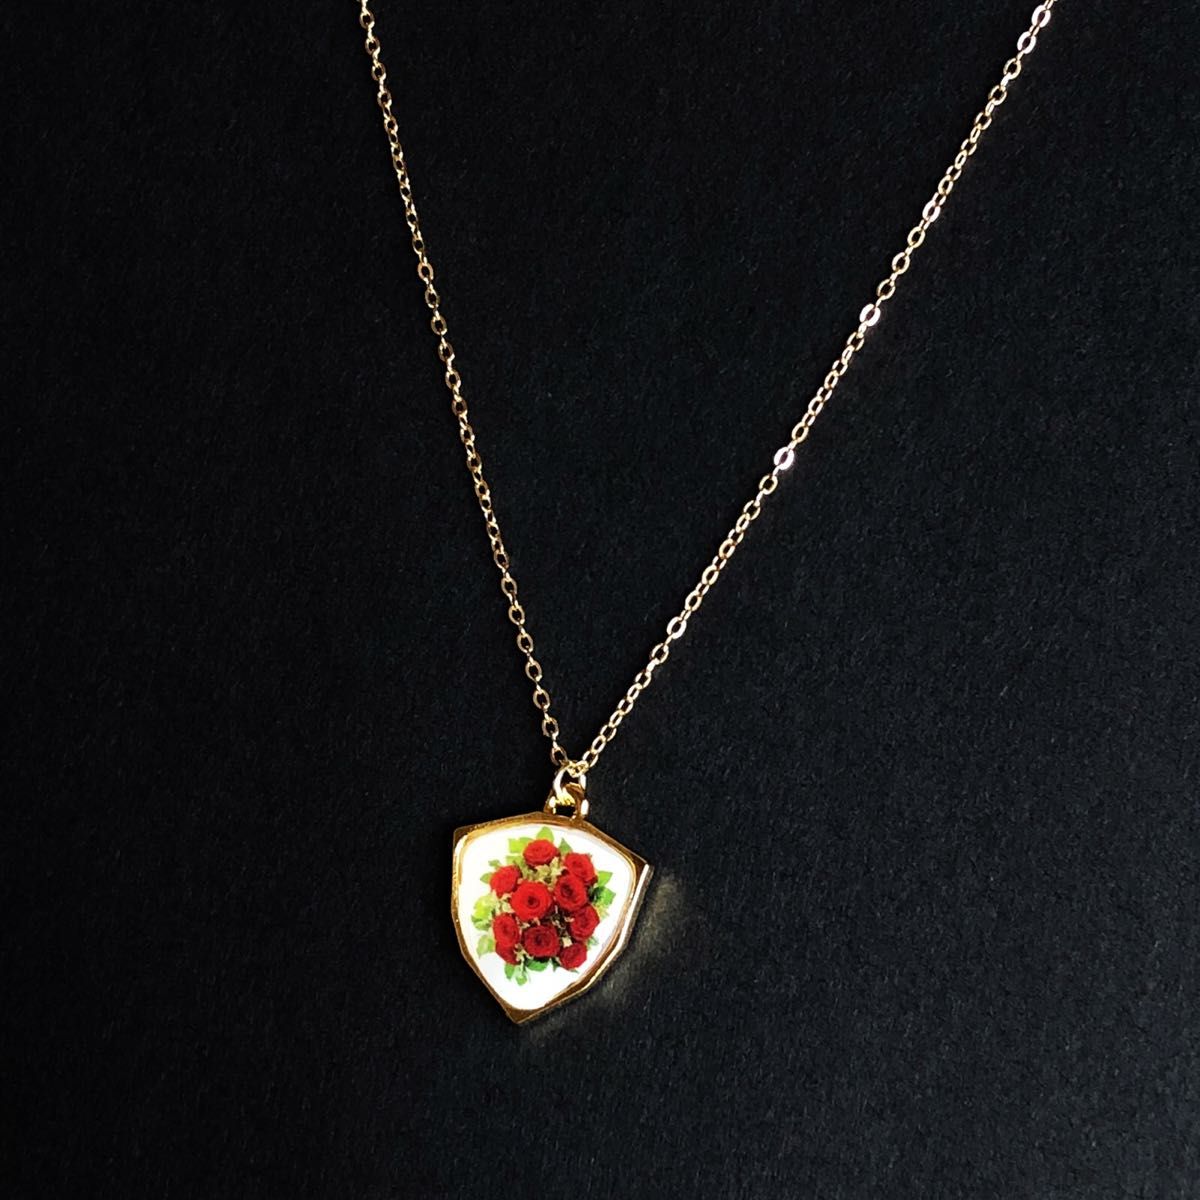 【ハンドメイド】薔薇と蝶 リバーシブル型ネックレス ペンダントネックレス レジンアクセサリー 蝶々 バラの花束 おしゃれ かわいい